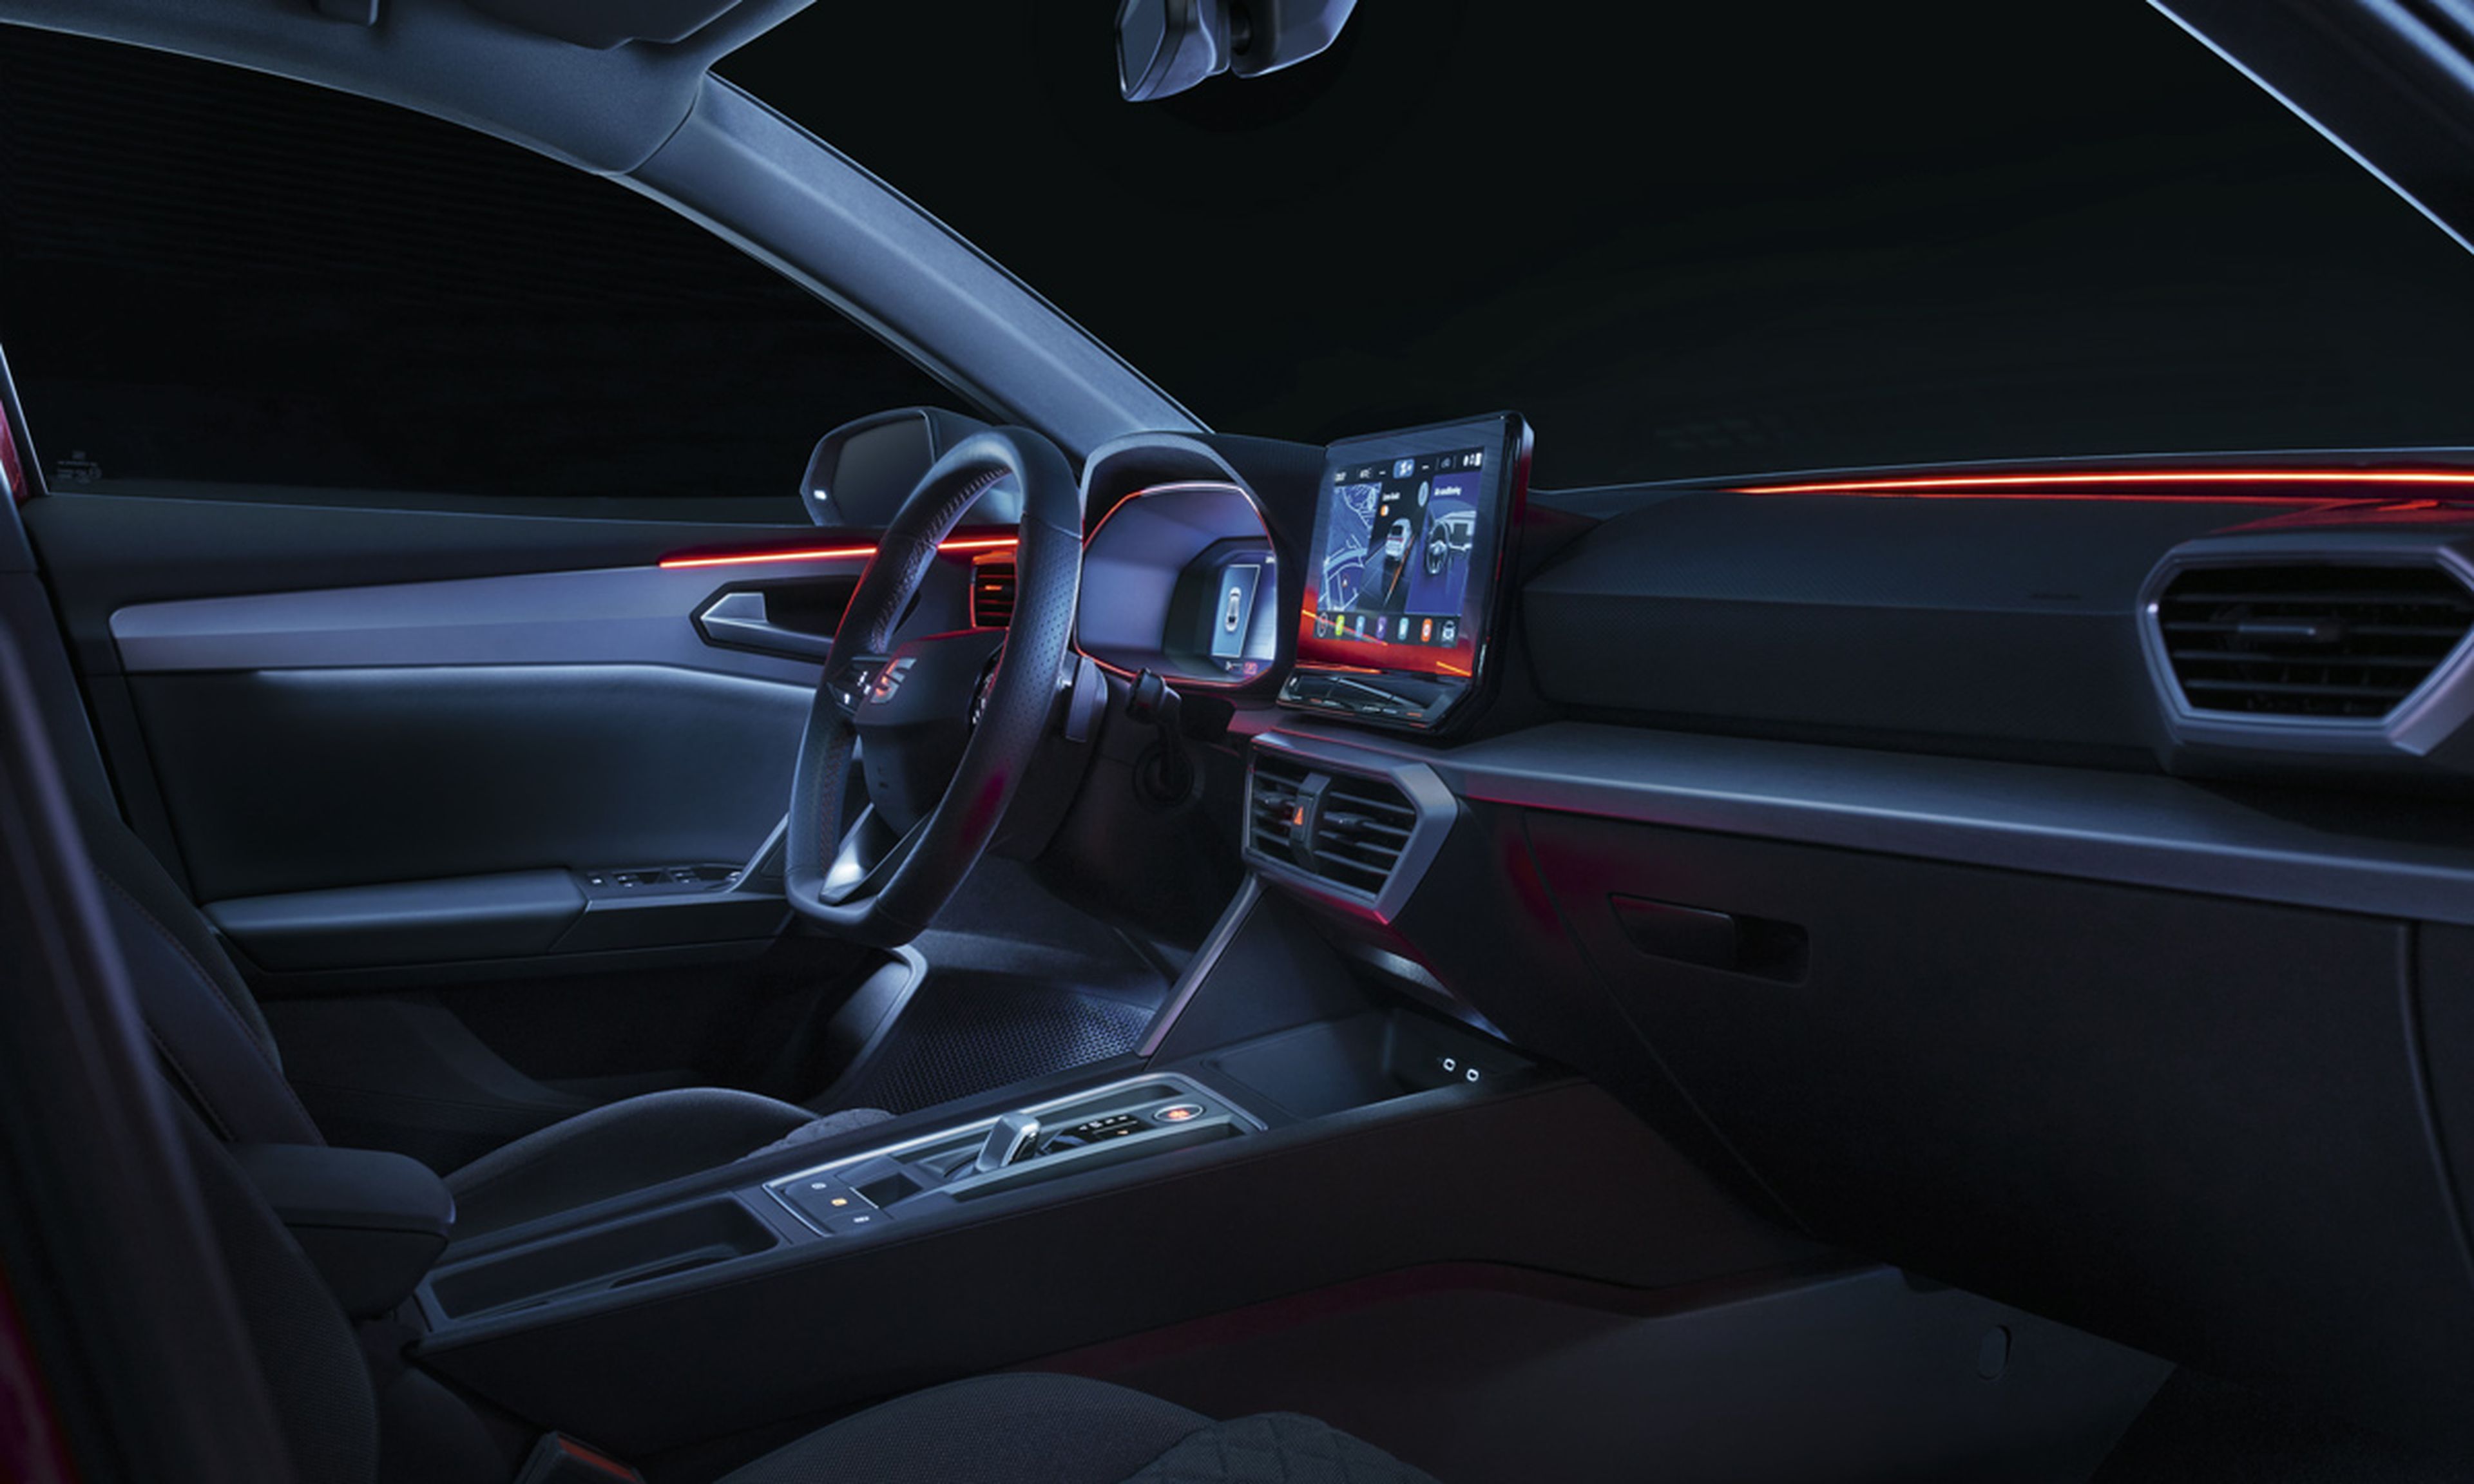 En el interior del Seat León 2020, donde se utiliza el LED a modo de iluminación ambiental